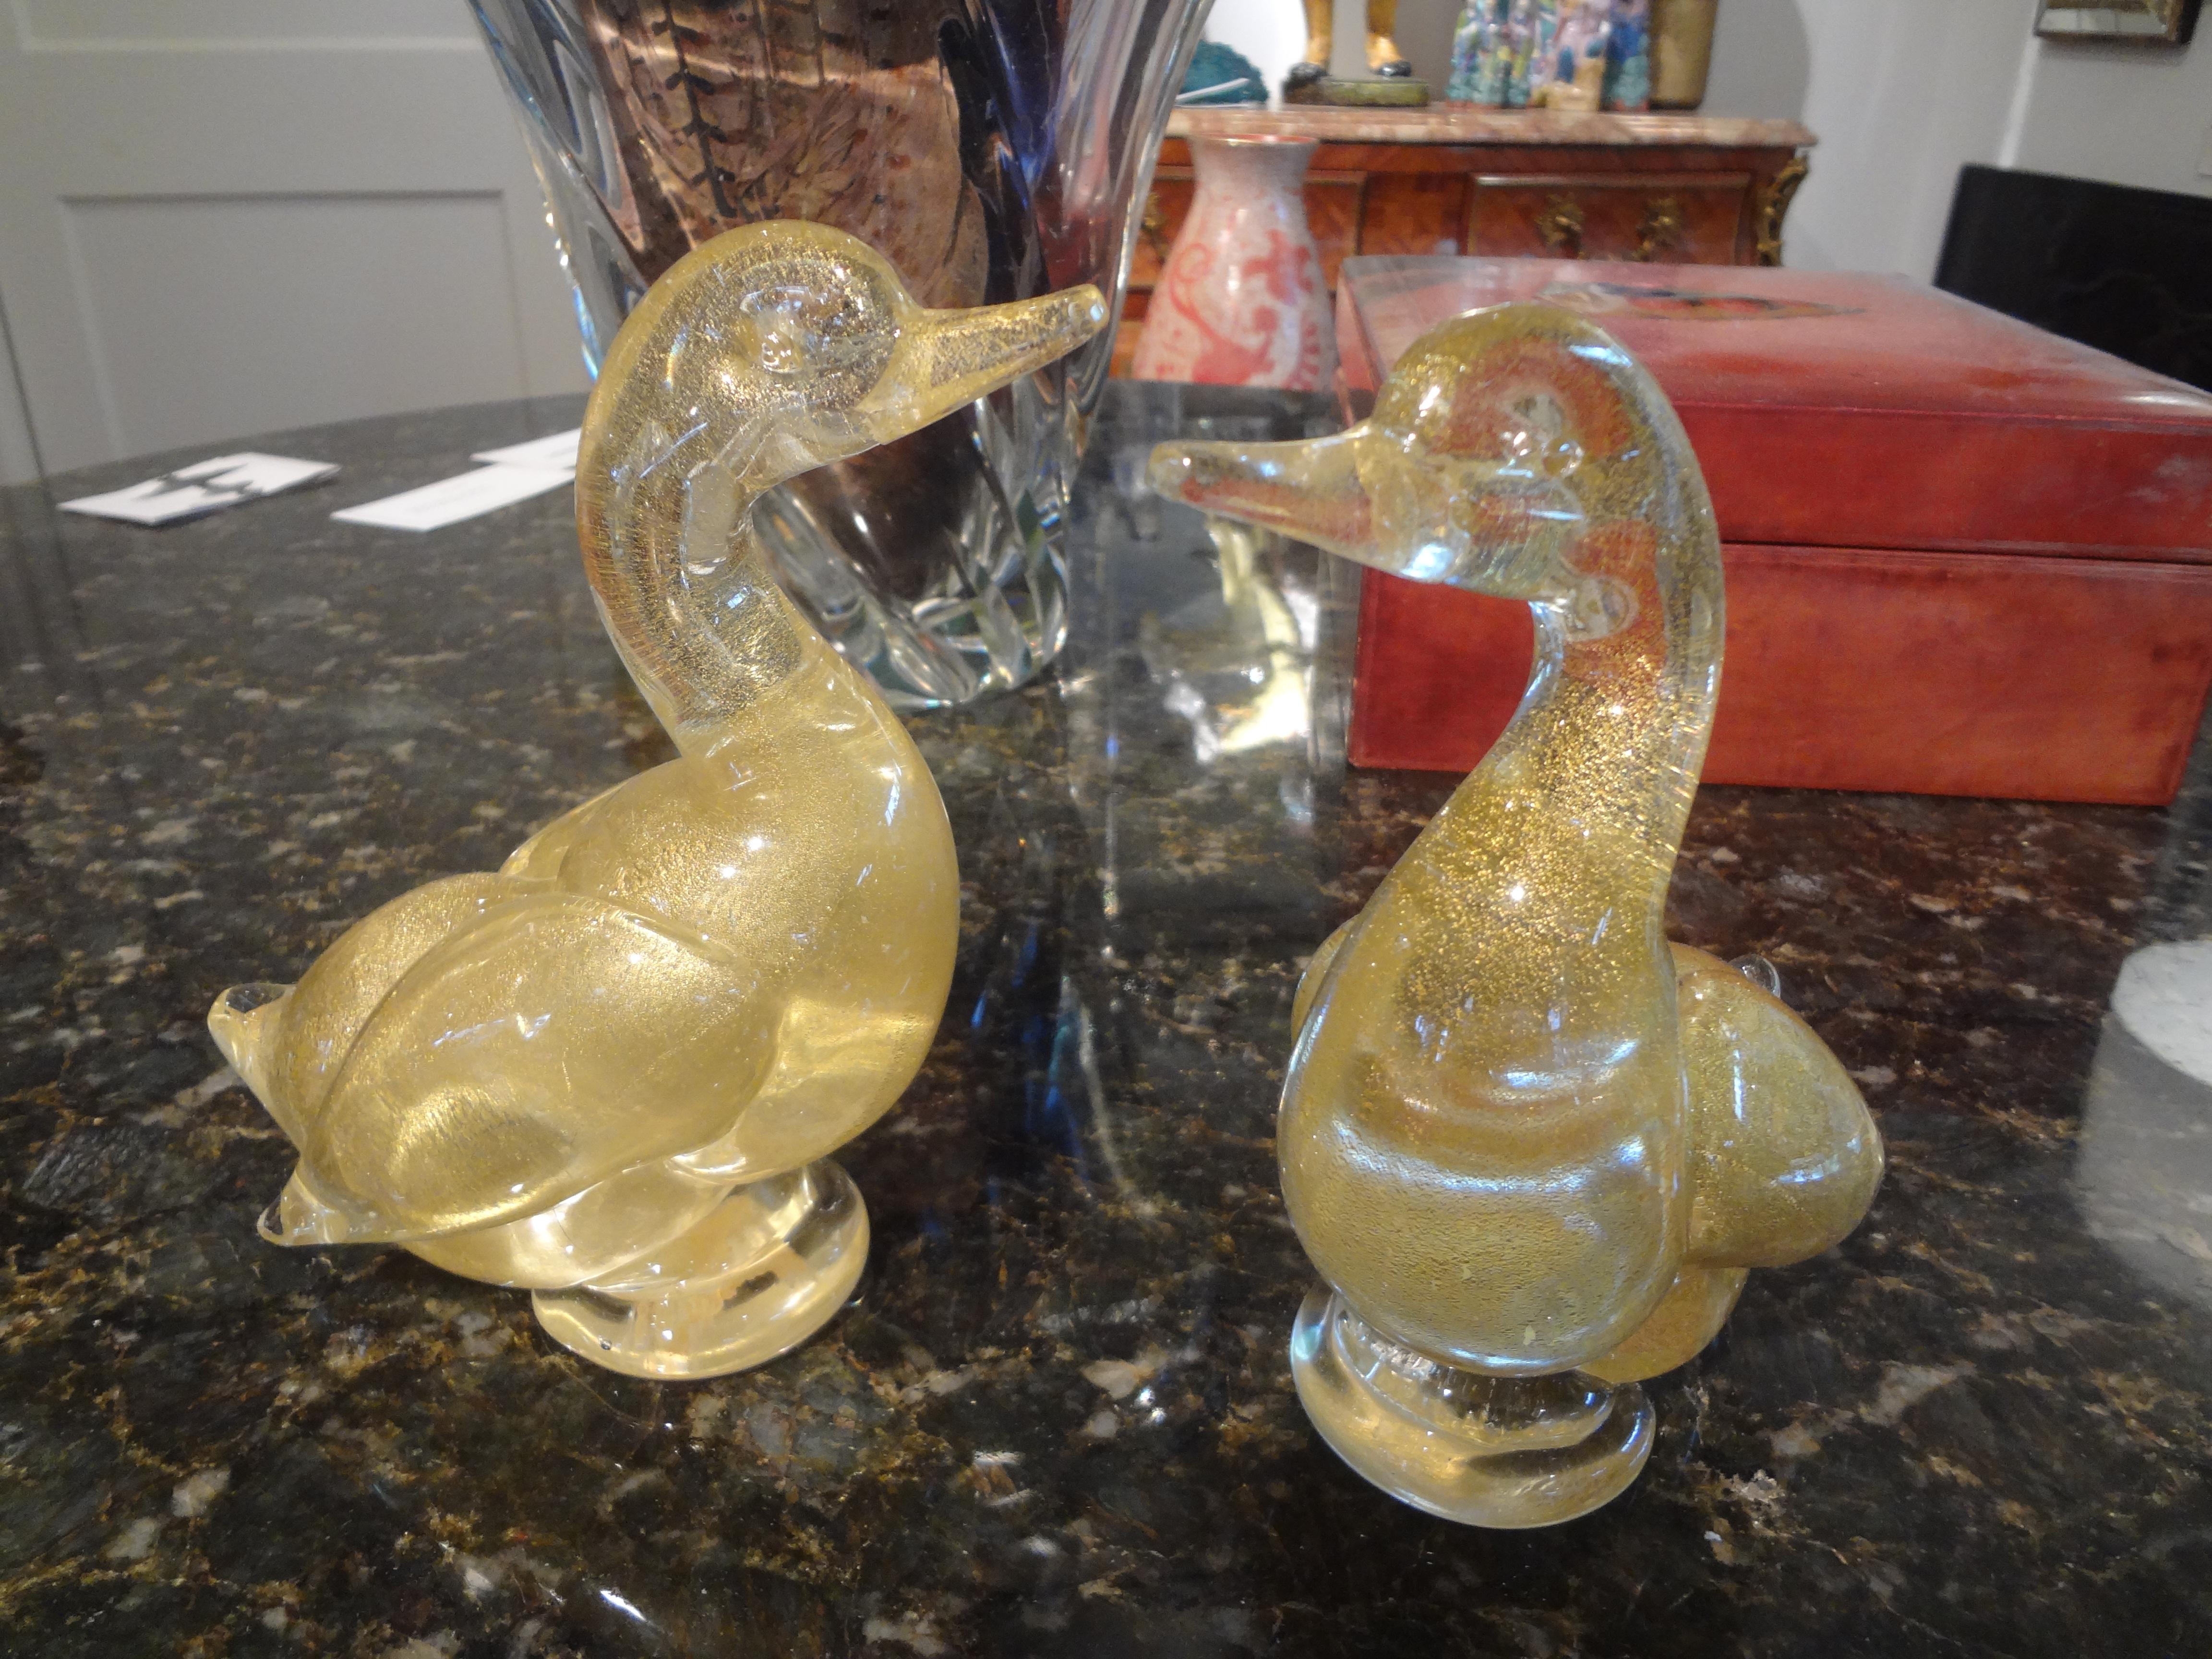 Belle paire de canards en verre de Murano de couleur or par Fratelli. Cette jolie paire de canards en verre de Murano est un verre doré chargé de belles mouchetures dorées. Cette paire de canards conserve ce qui reste de l'étiquette originale, (voir